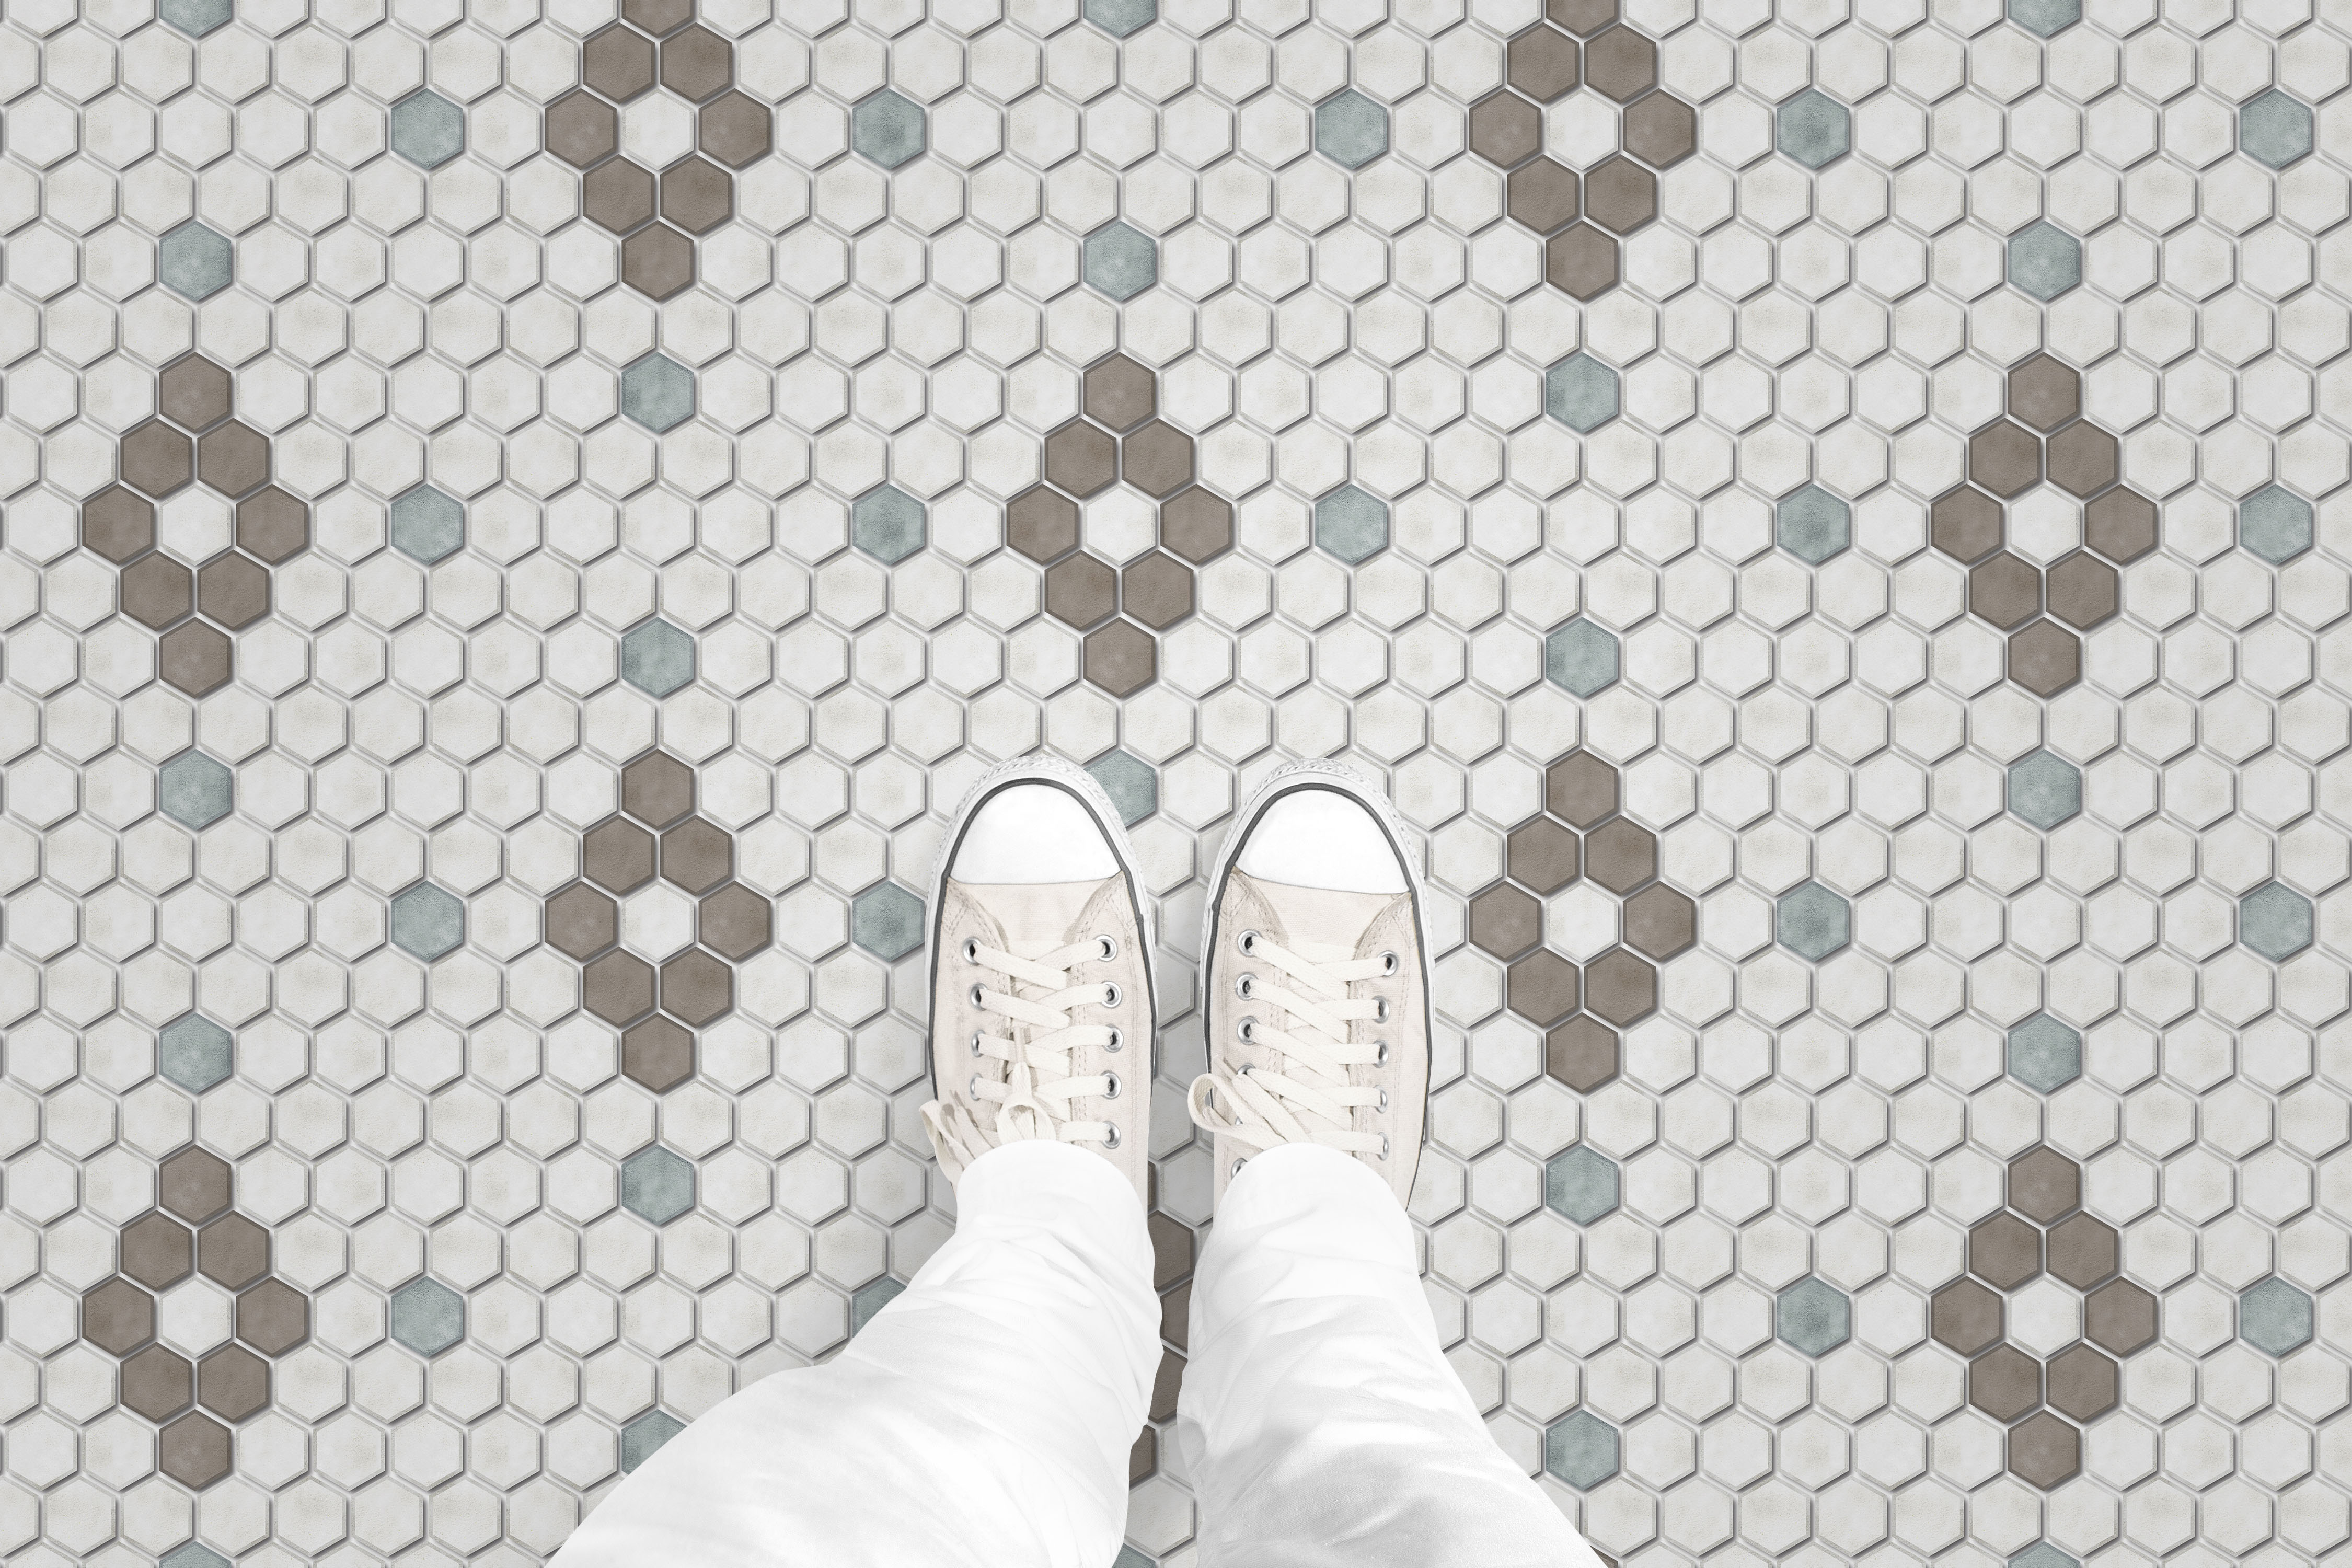 Hexagon Diamond Tile floor_feet_shop.gif_p2234a1.jpg